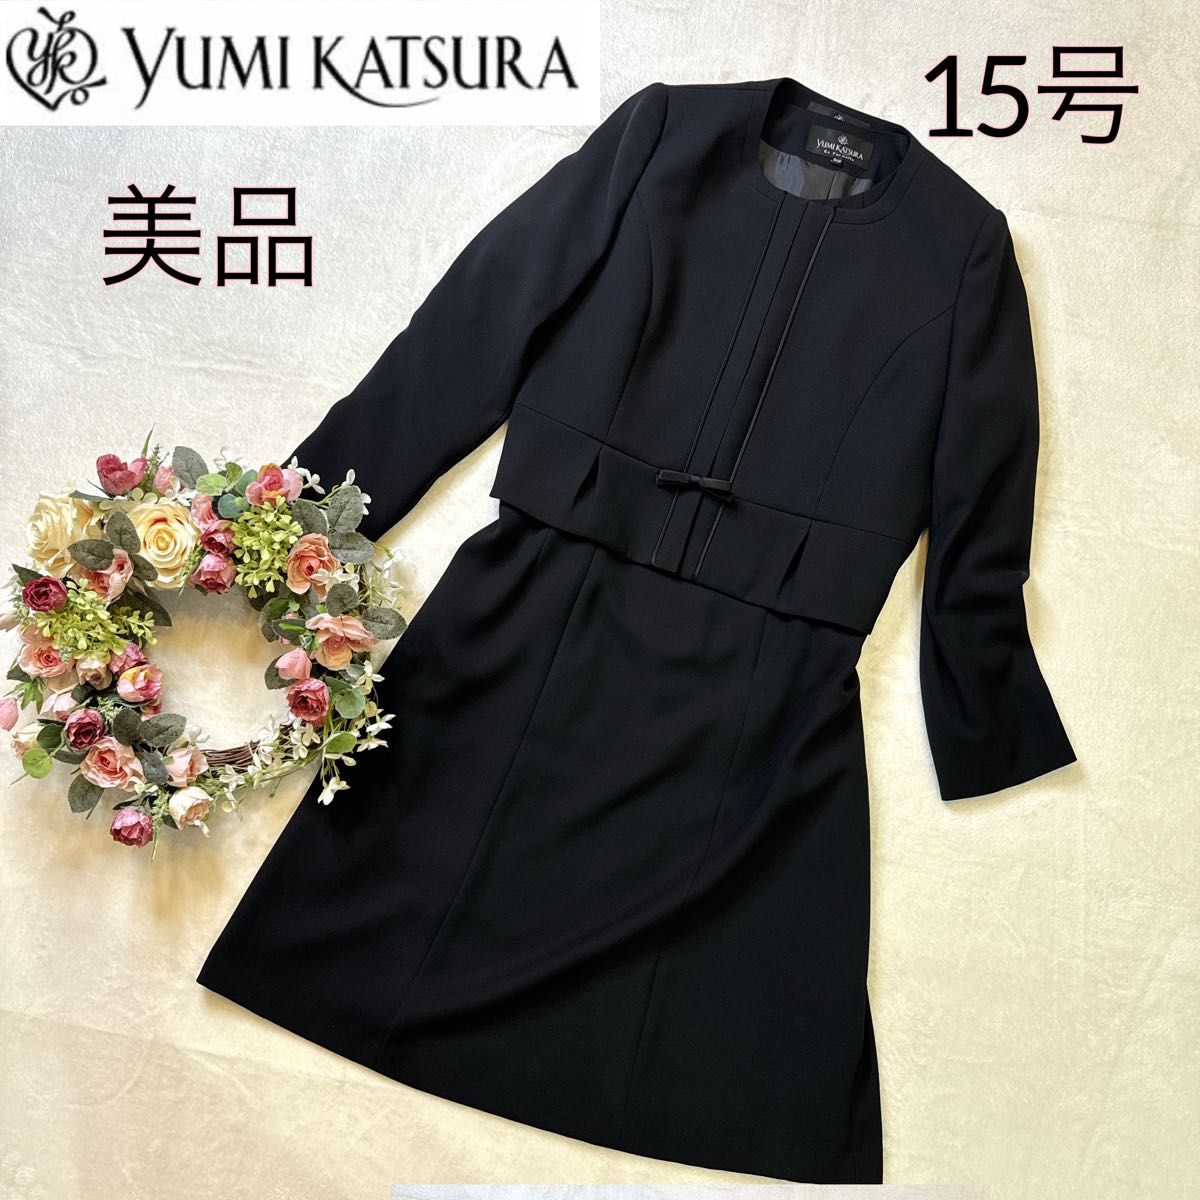 【美品・大きい】ユミカツラ ブラックフォーマル ノーカラー ワンピース 15号 礼服 喪服 セットアップ 2XL 黒 レディース